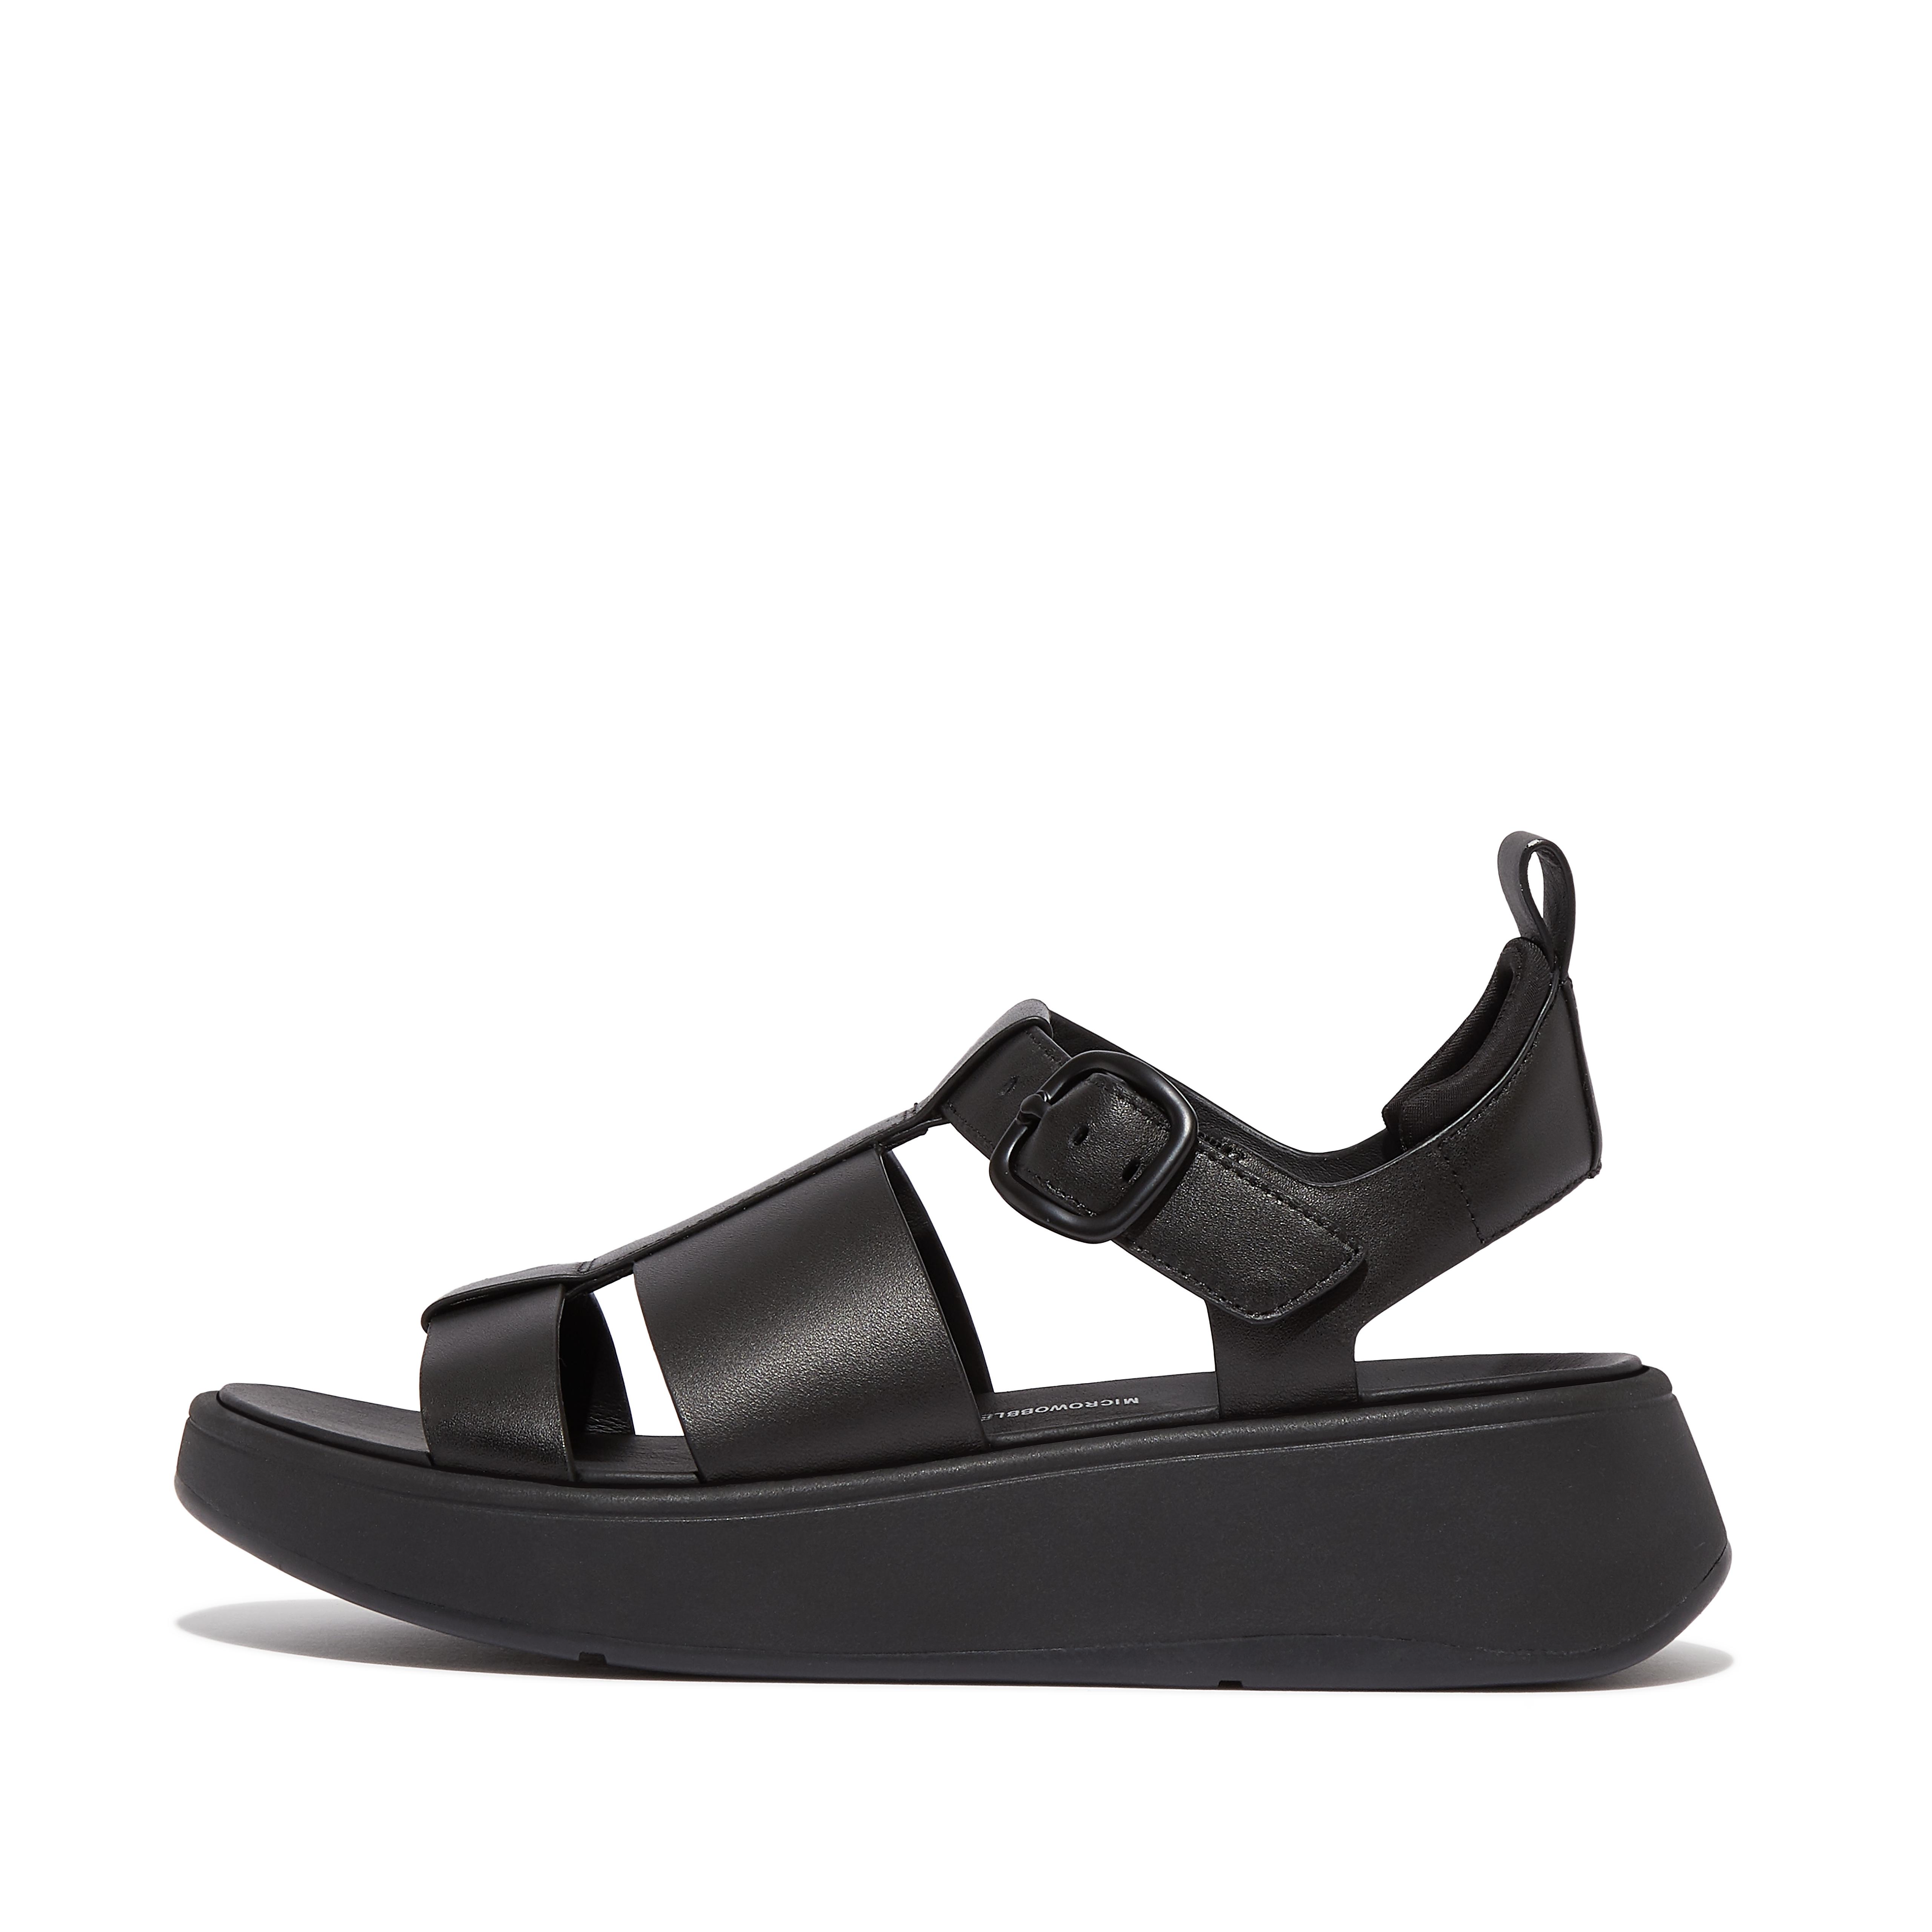 Fitflop Leather Flatform Fisherman Sandals,Black